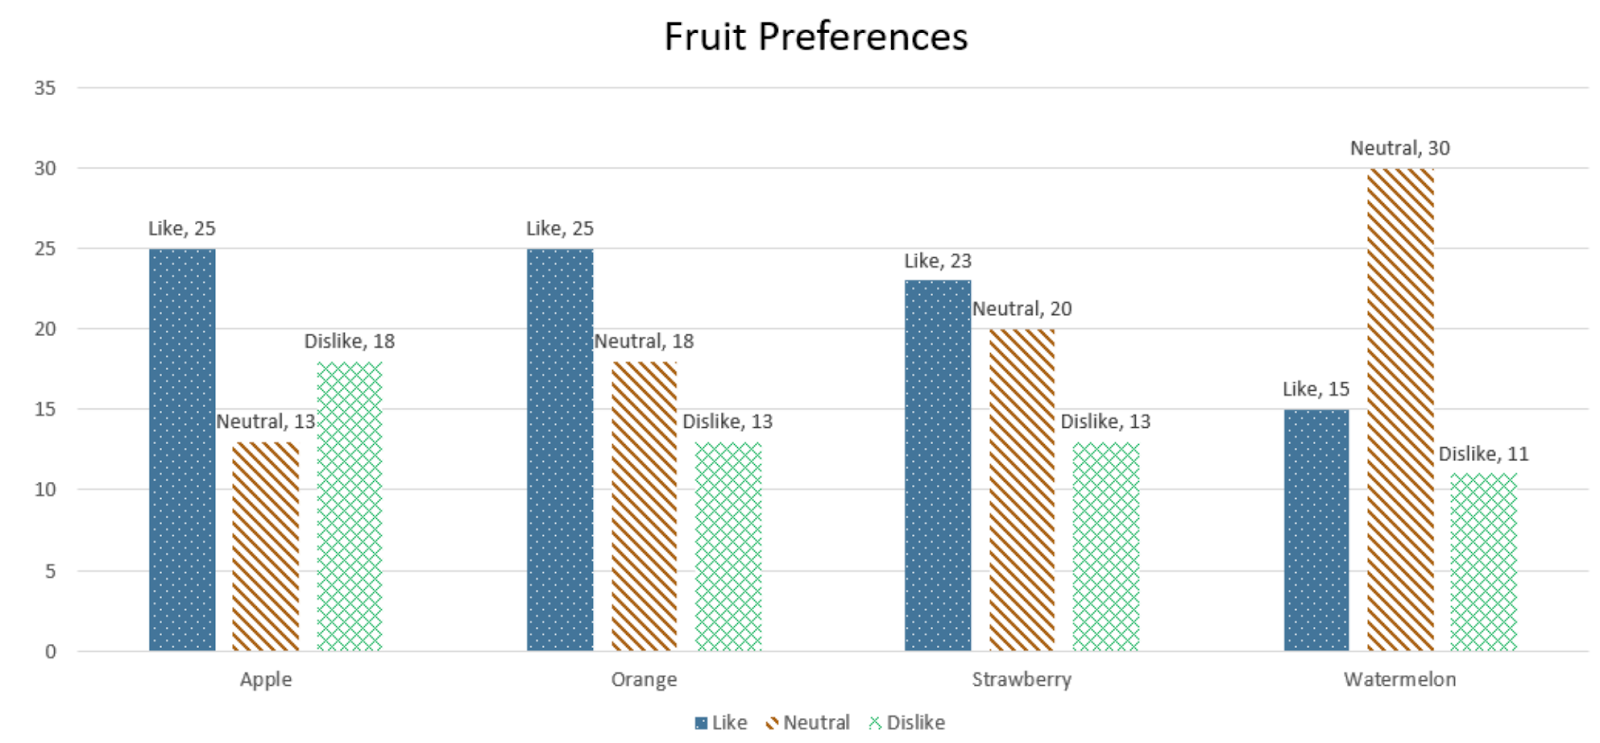 Imagen del mismo gráfico de barras, titulado "Preferencias de frutas".  Además de los elementos descritos anteriormente, cada barra del gráfico de barras (agrupadas por tipo de fruta) también está etiquetada con la preferencia y el número de encuestados, que aparece en la parte superior de cada barra respectiva.  De izquierda a derecha: Manzanas - 25 Me gusta, 13 Neutral, 18 No me gusta.  Naranjas: 25 Me gusta, 18 Neutral, 13 No me gusta.  Fresas: 23 Me gusta, 20 Neutral, 13 No me gusta.  Sandías: 15 Me gusta, 30 Neutral, 11 No me gusta.